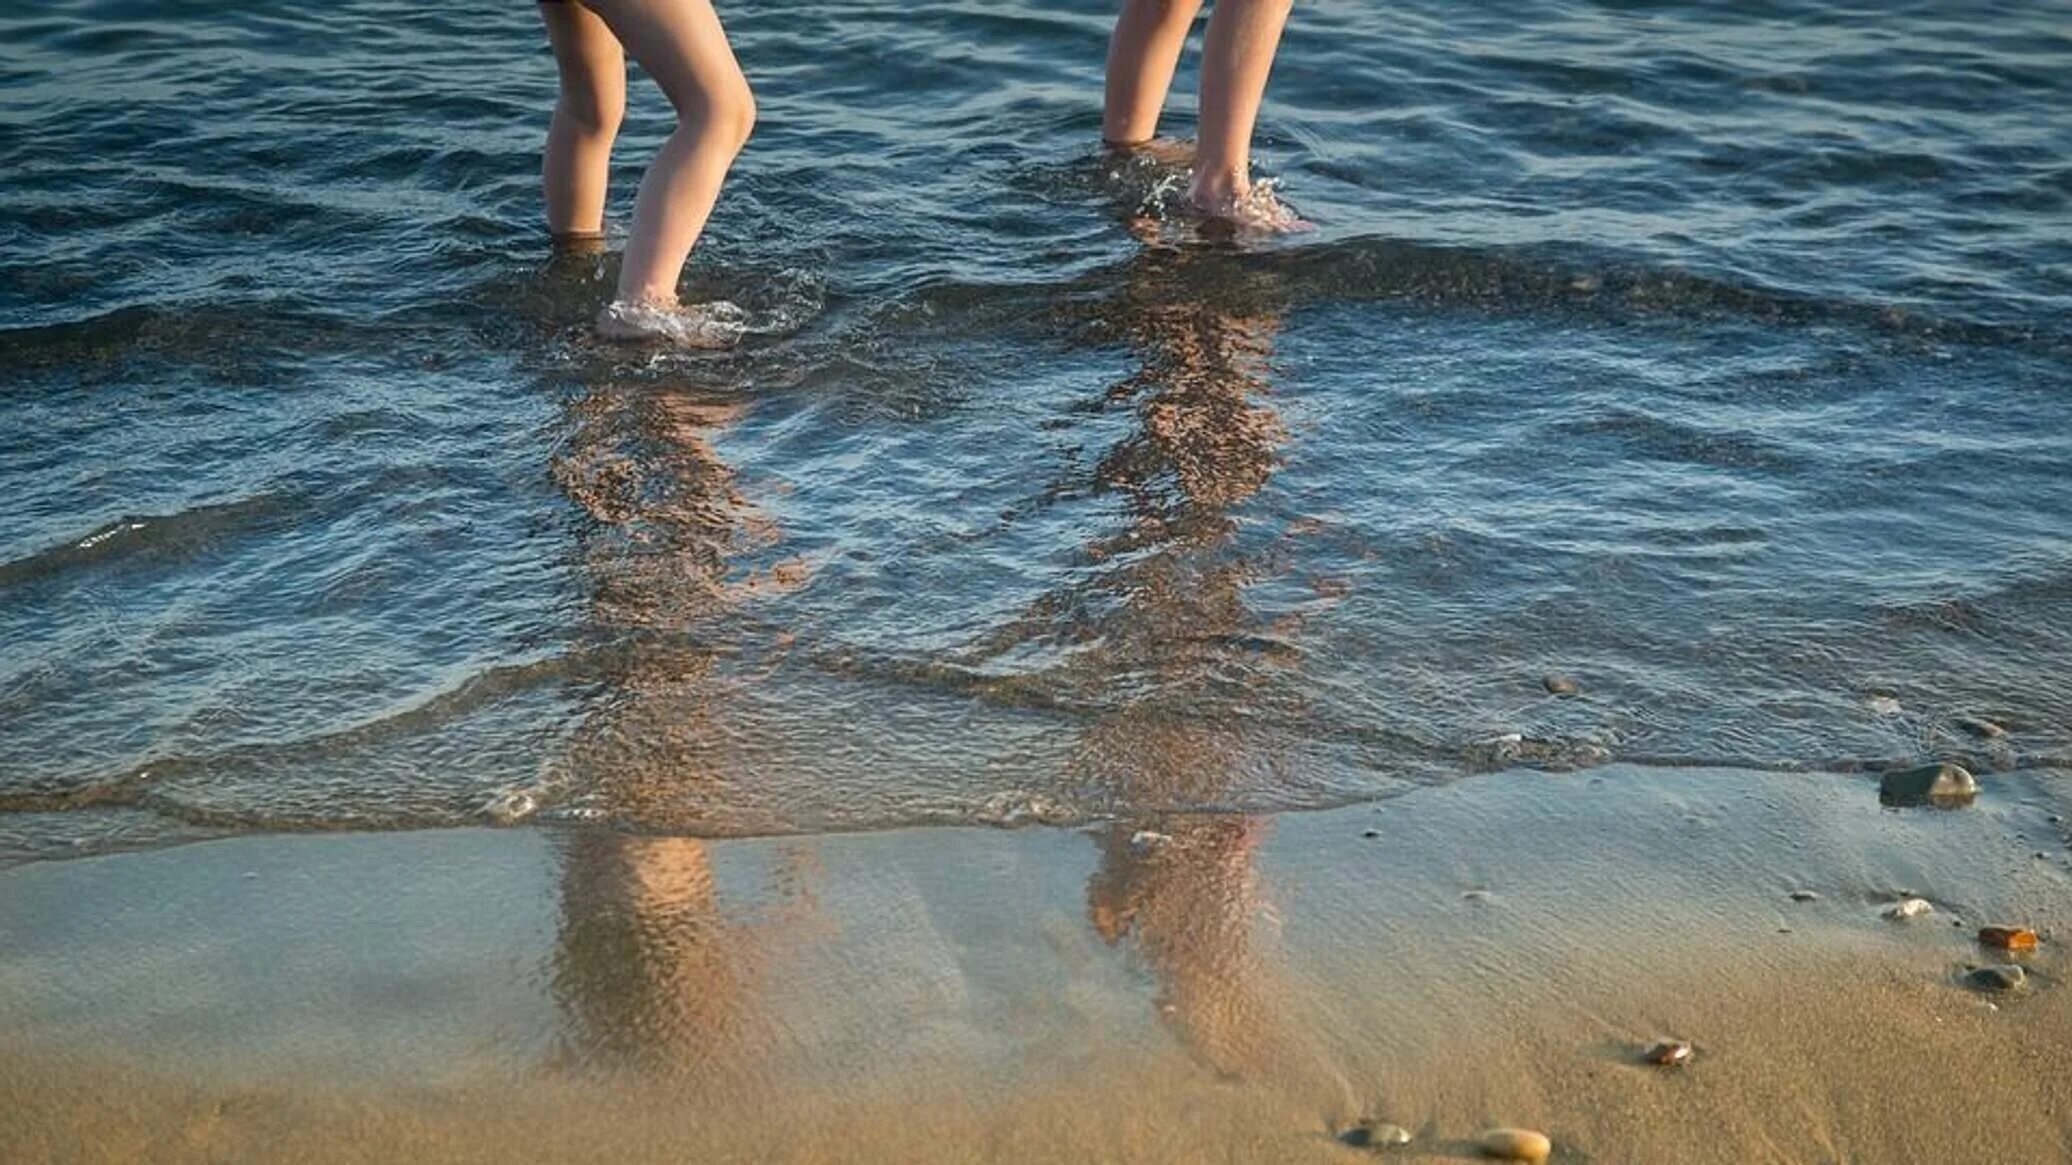 Гулять купаться. Купаться в море. Дети купаются в море. На пляже купание. Девочка купается в море.